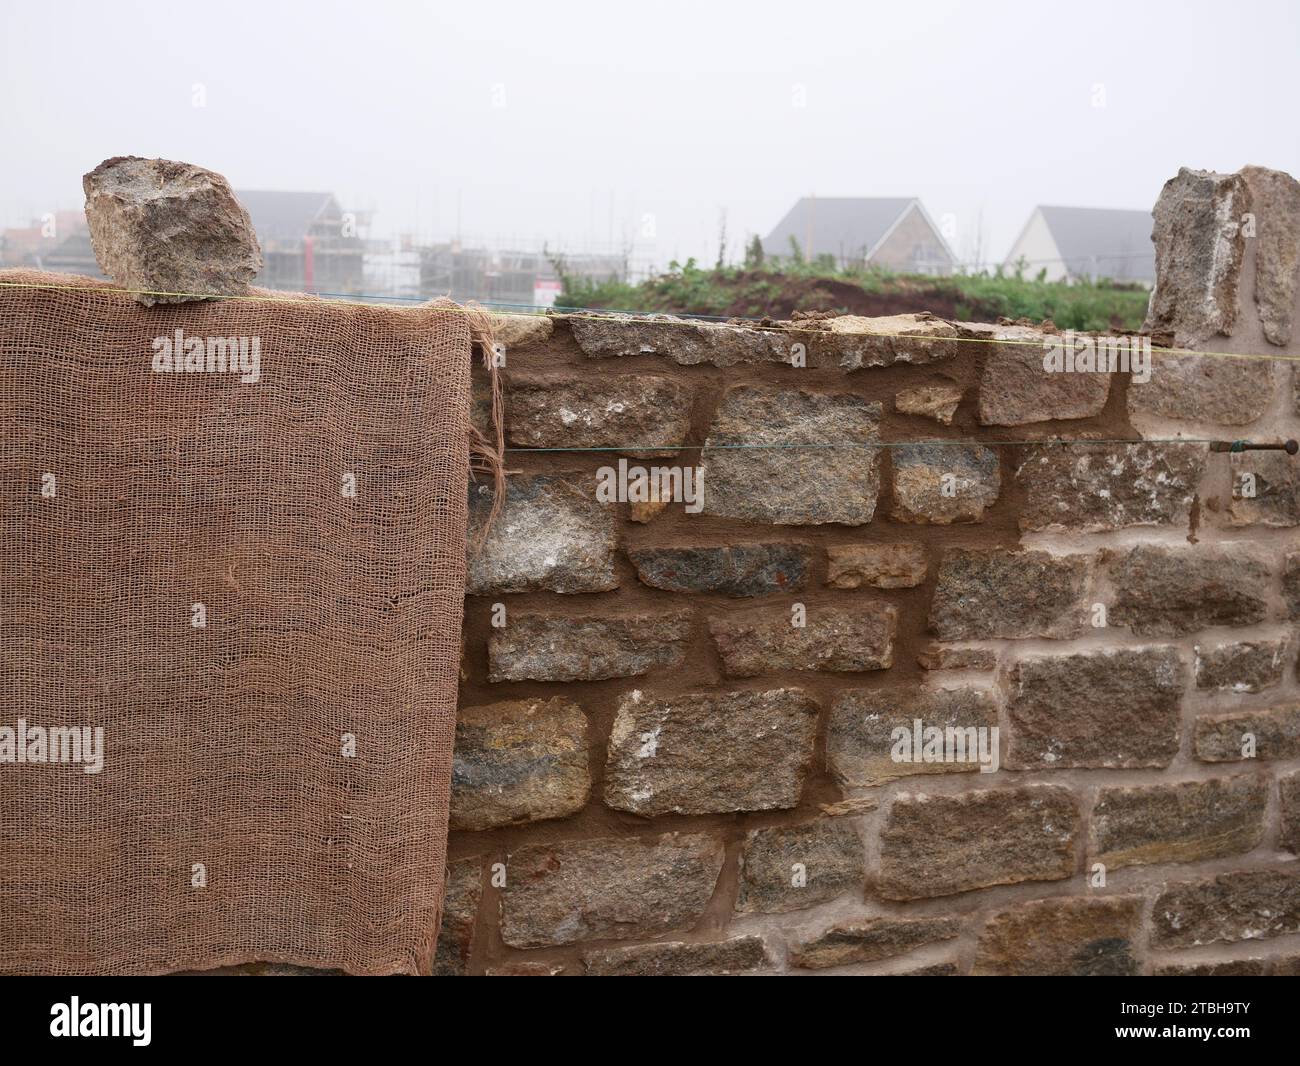 Mur d'enceinte avec façade traditionnelle en pierre en cours de construction dans un nouveau développement immobilier. Hessian protège la nouvelle maçonnerie du froid. Banque D'Images